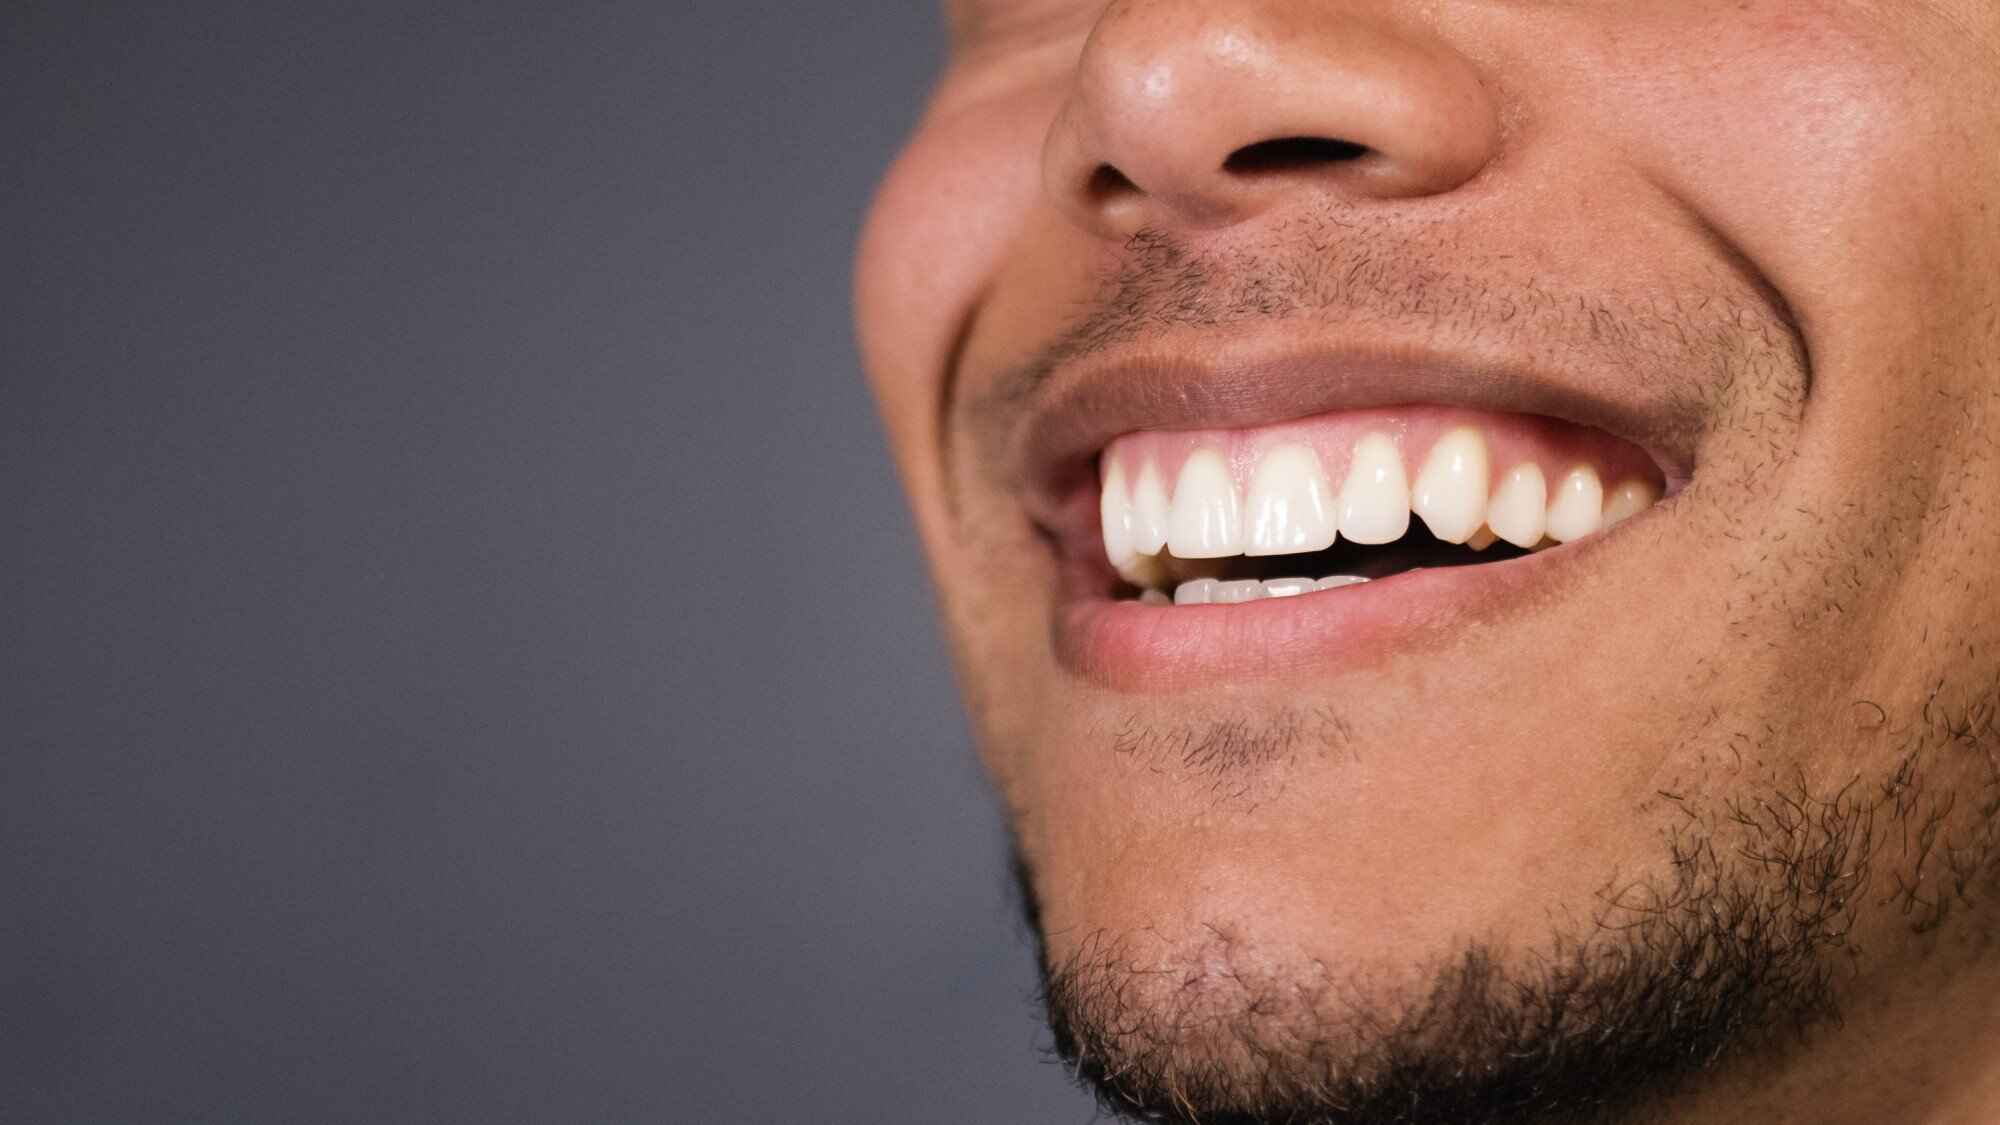 healthy teeth vs unhealthy teeth